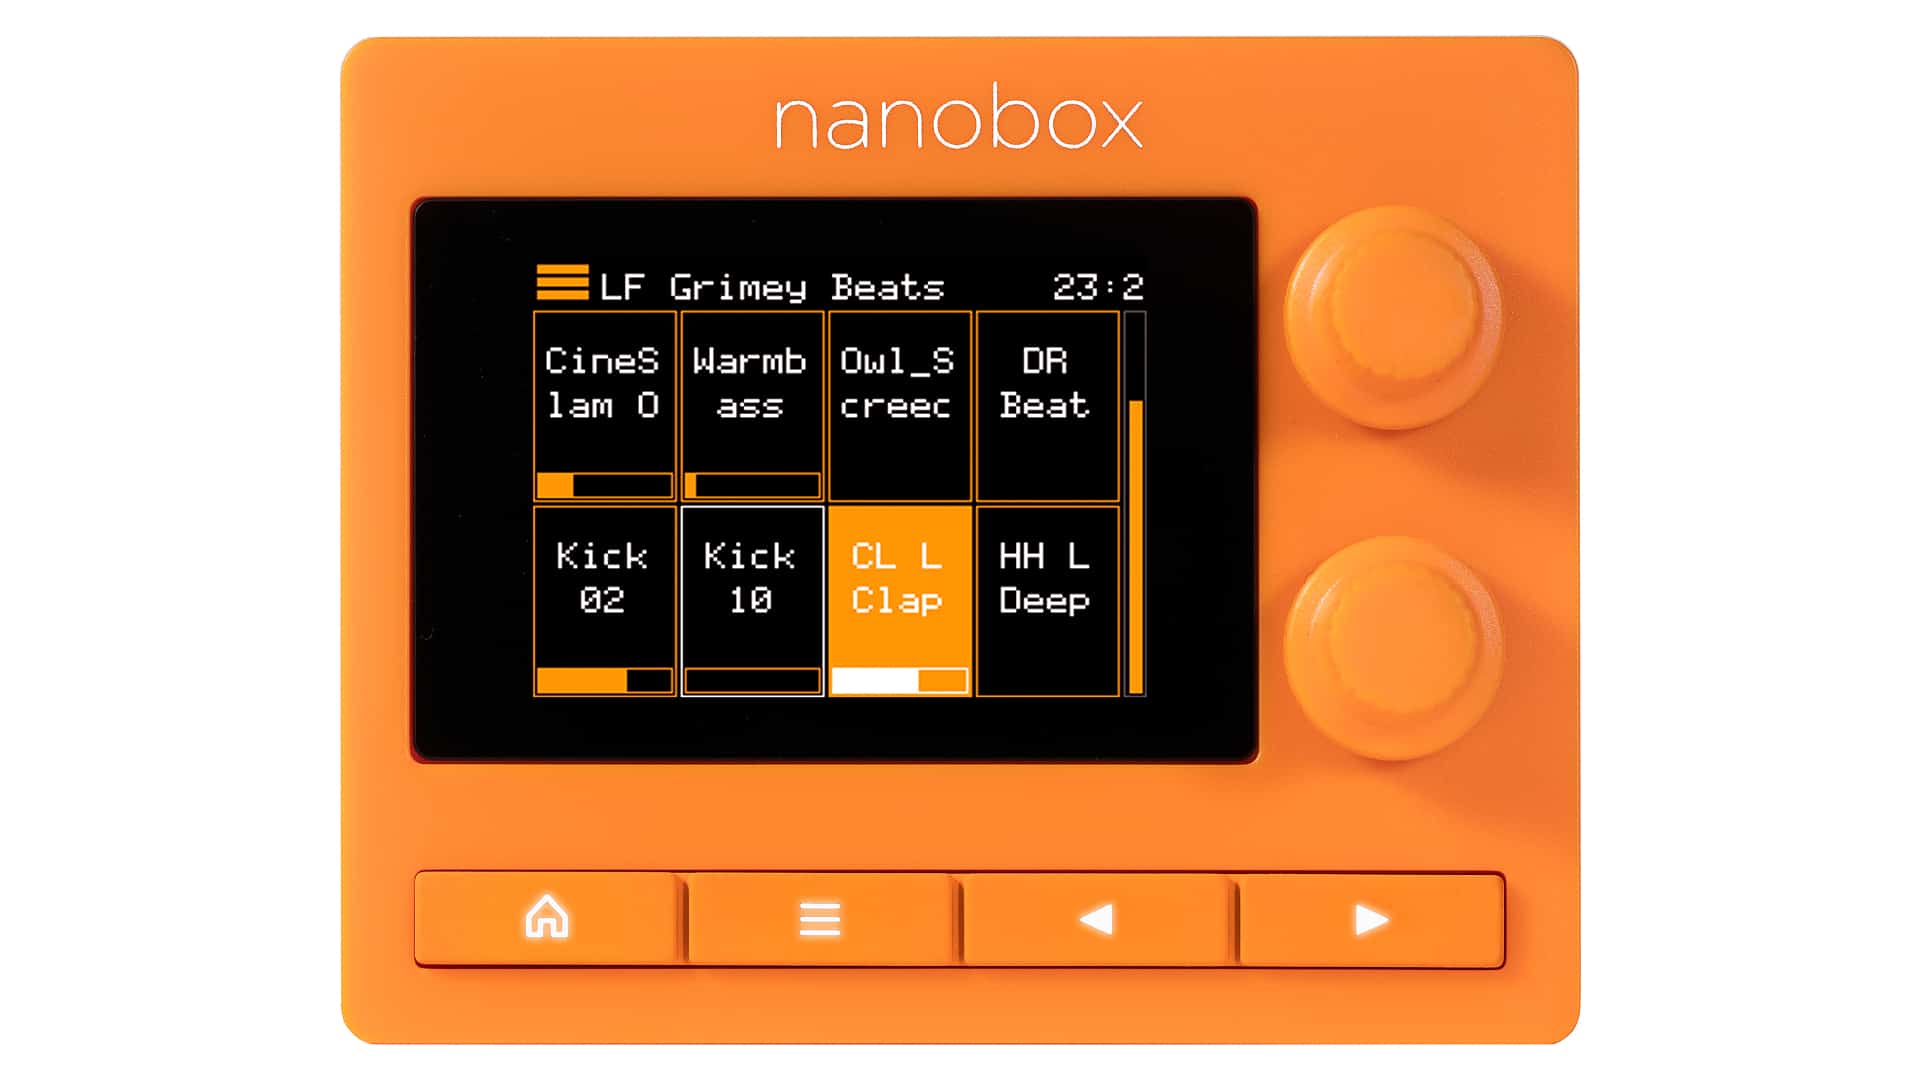 1010music nanobox tangerine